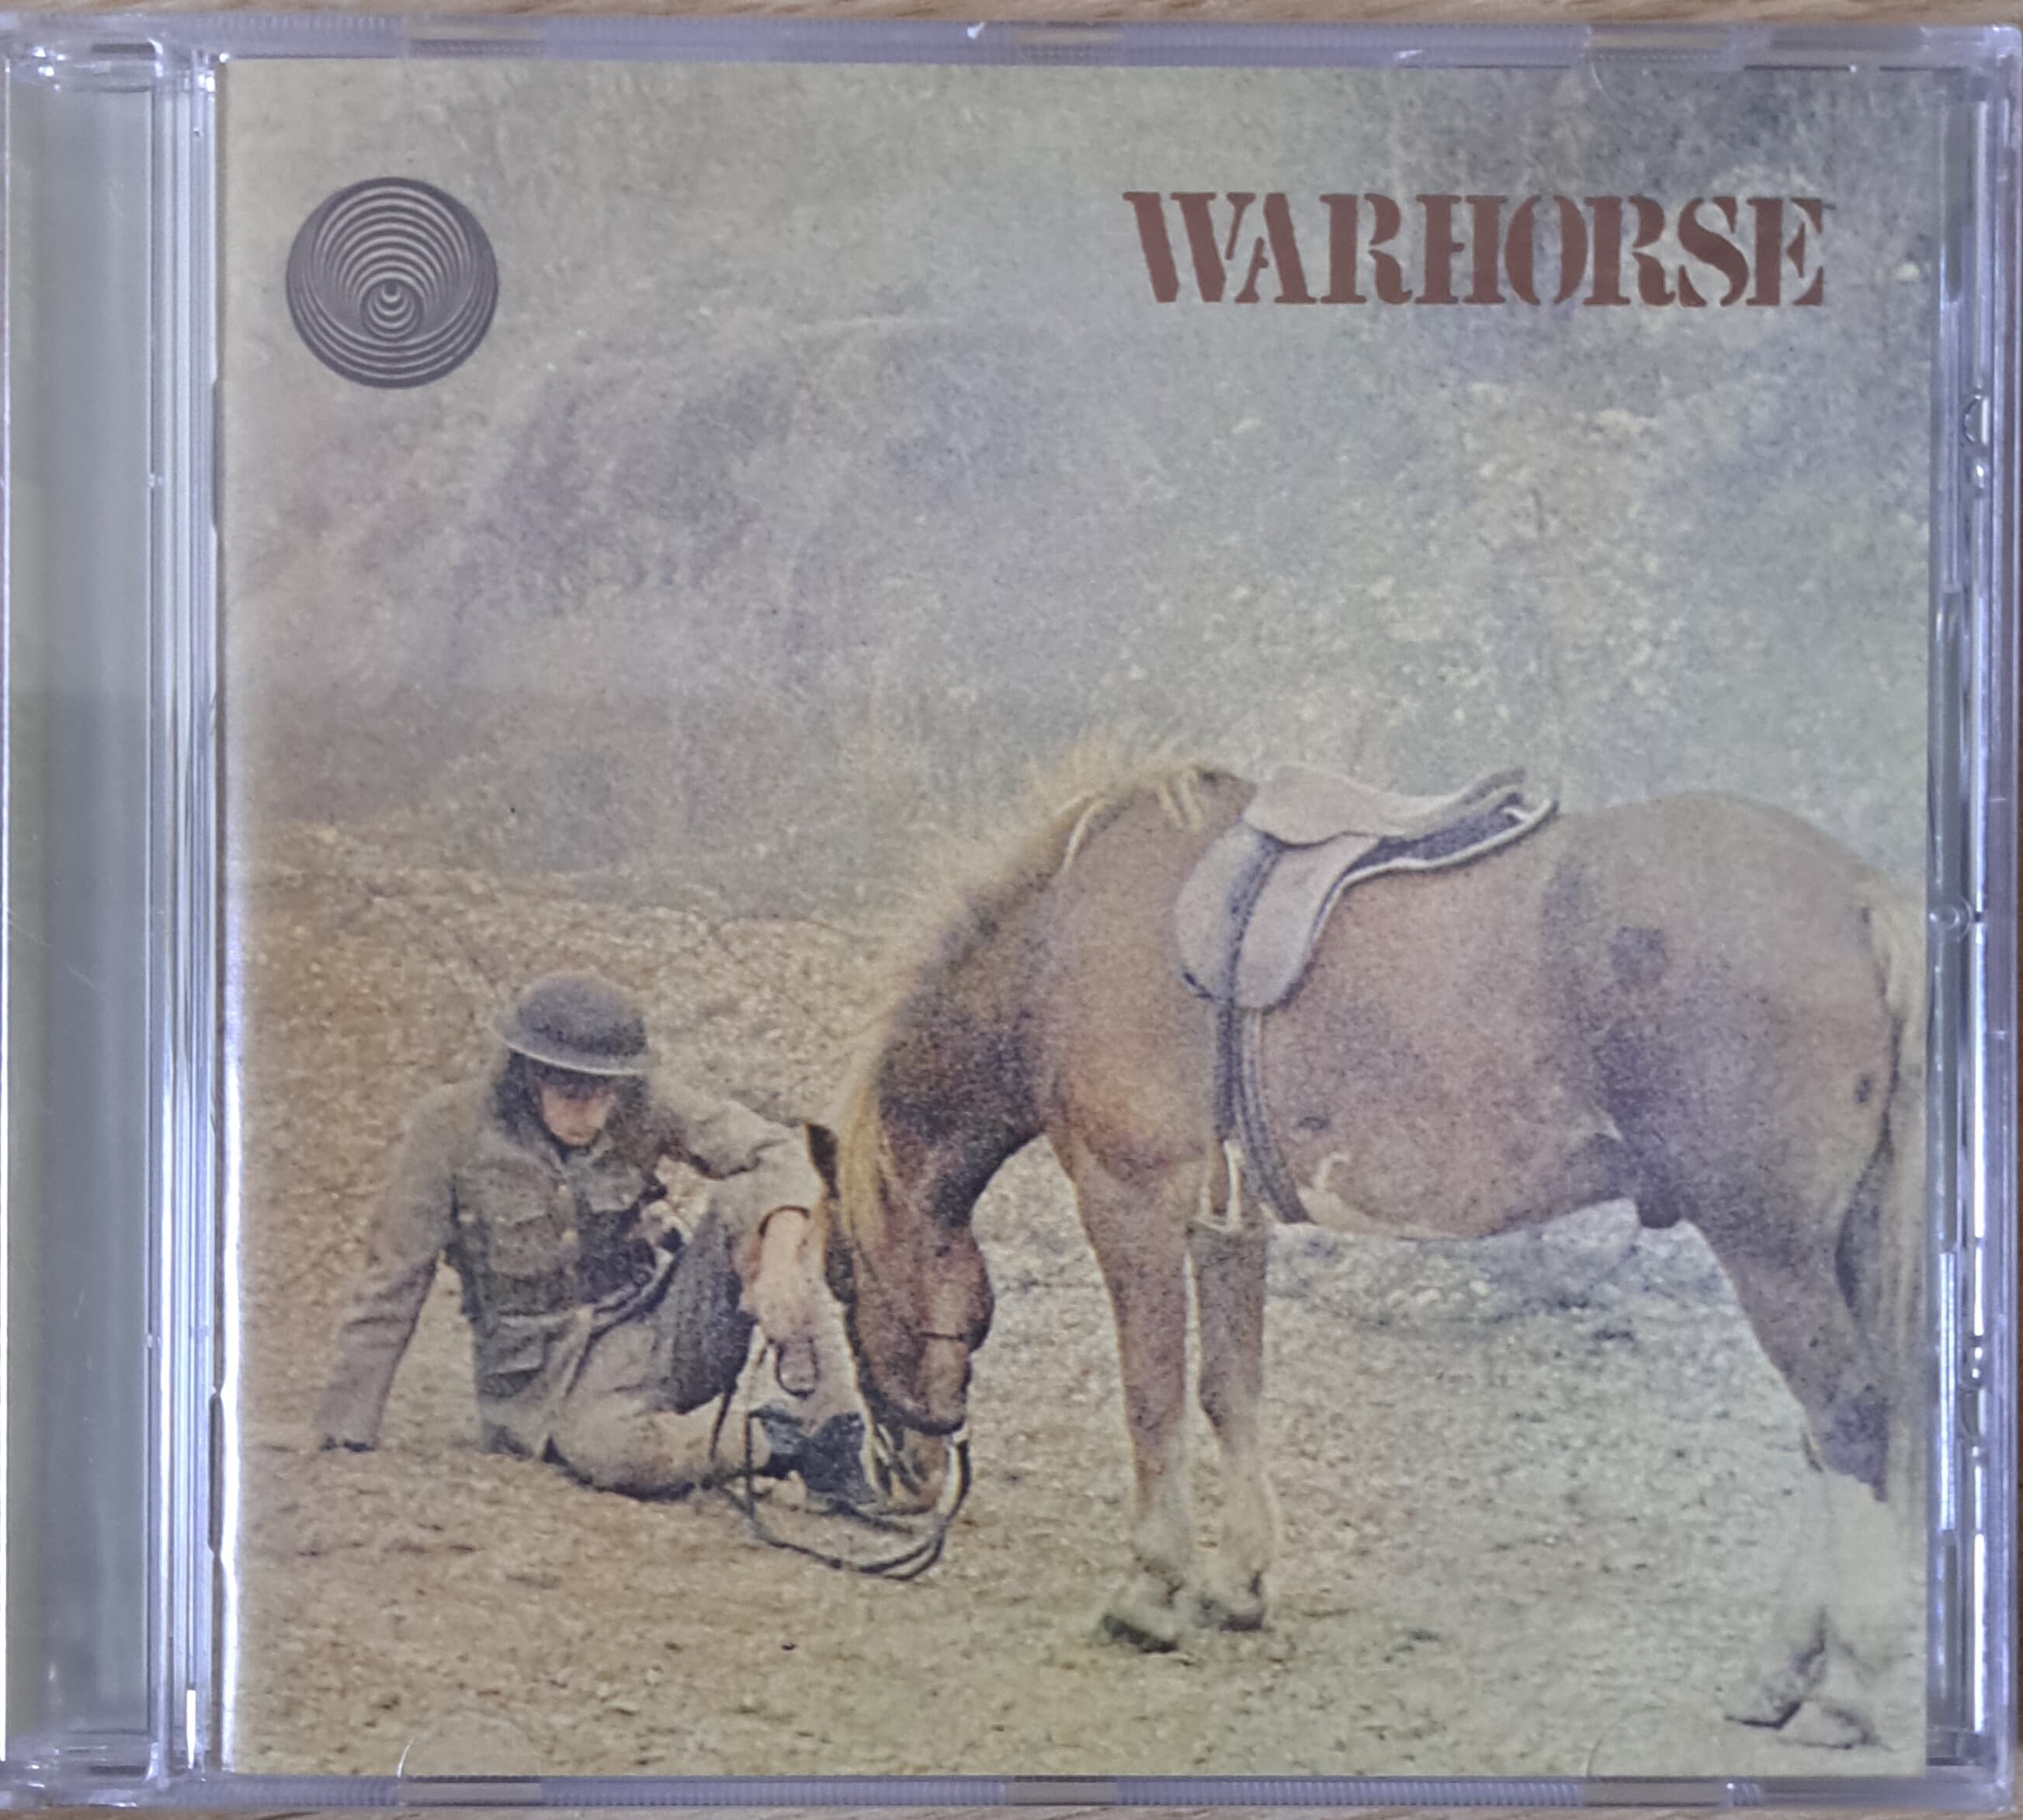 워호스 (Warhorse)/Warhorse